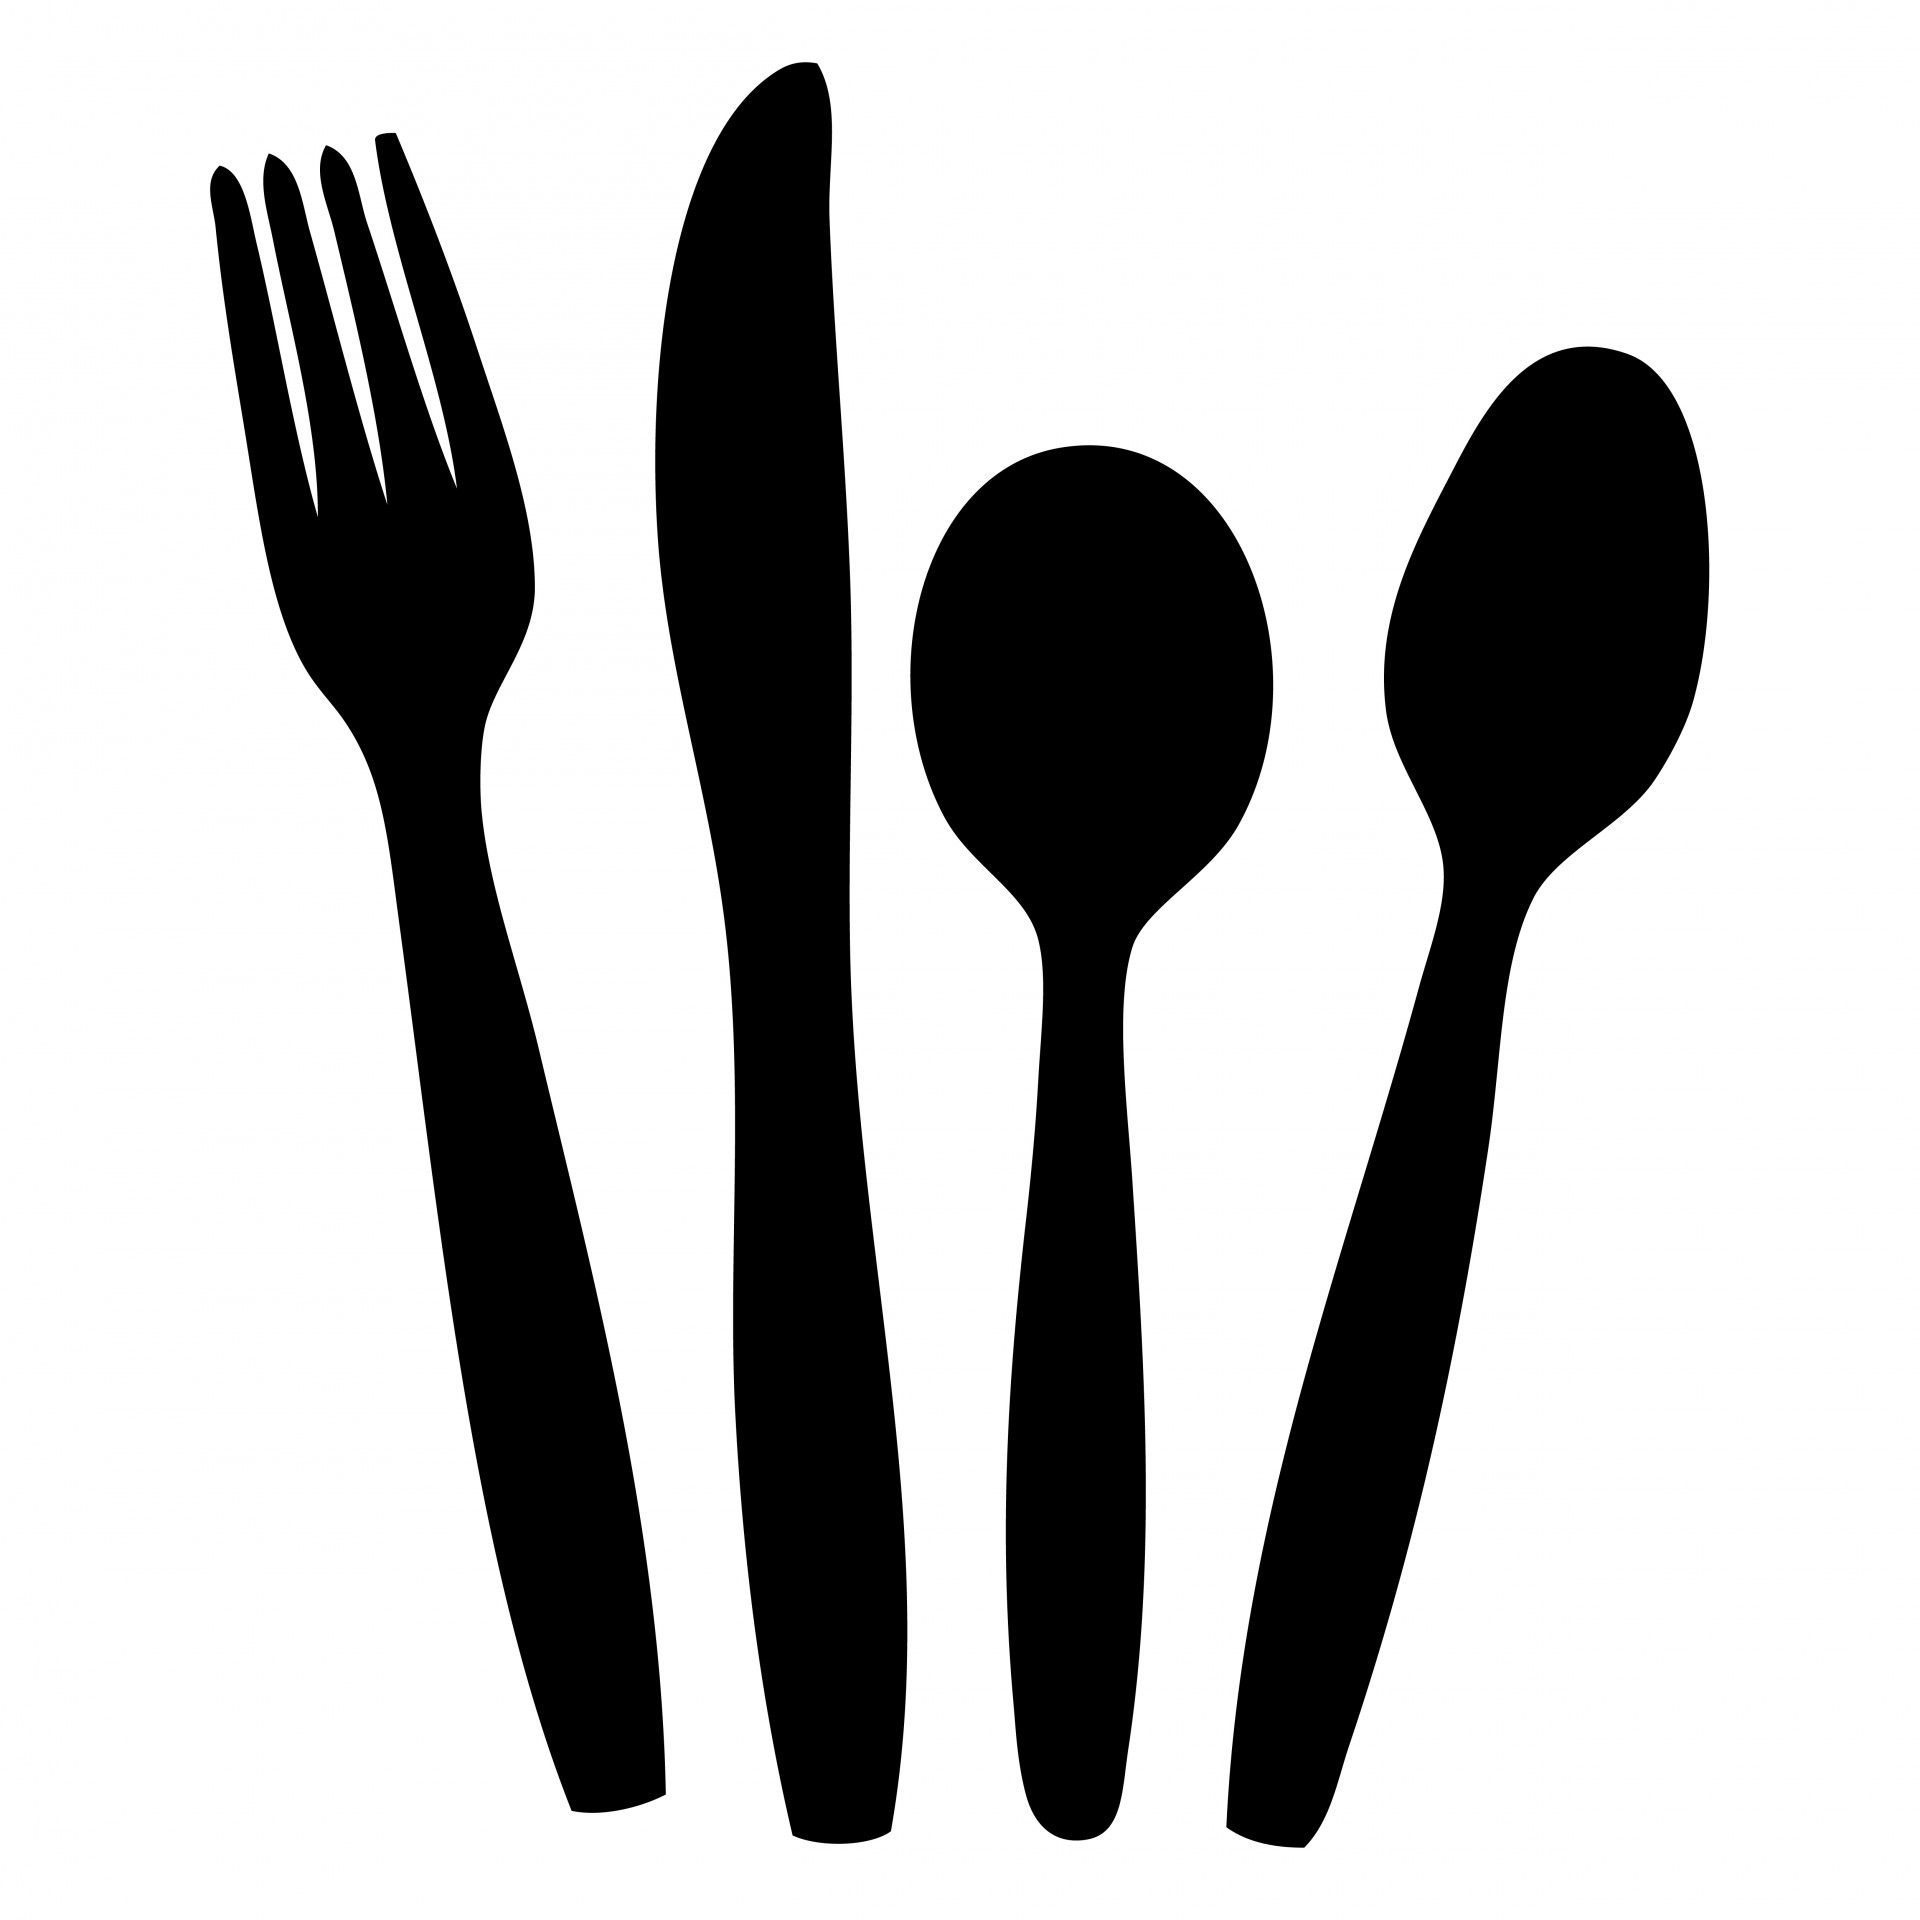 Cutlery,knife,fork,spoon,black